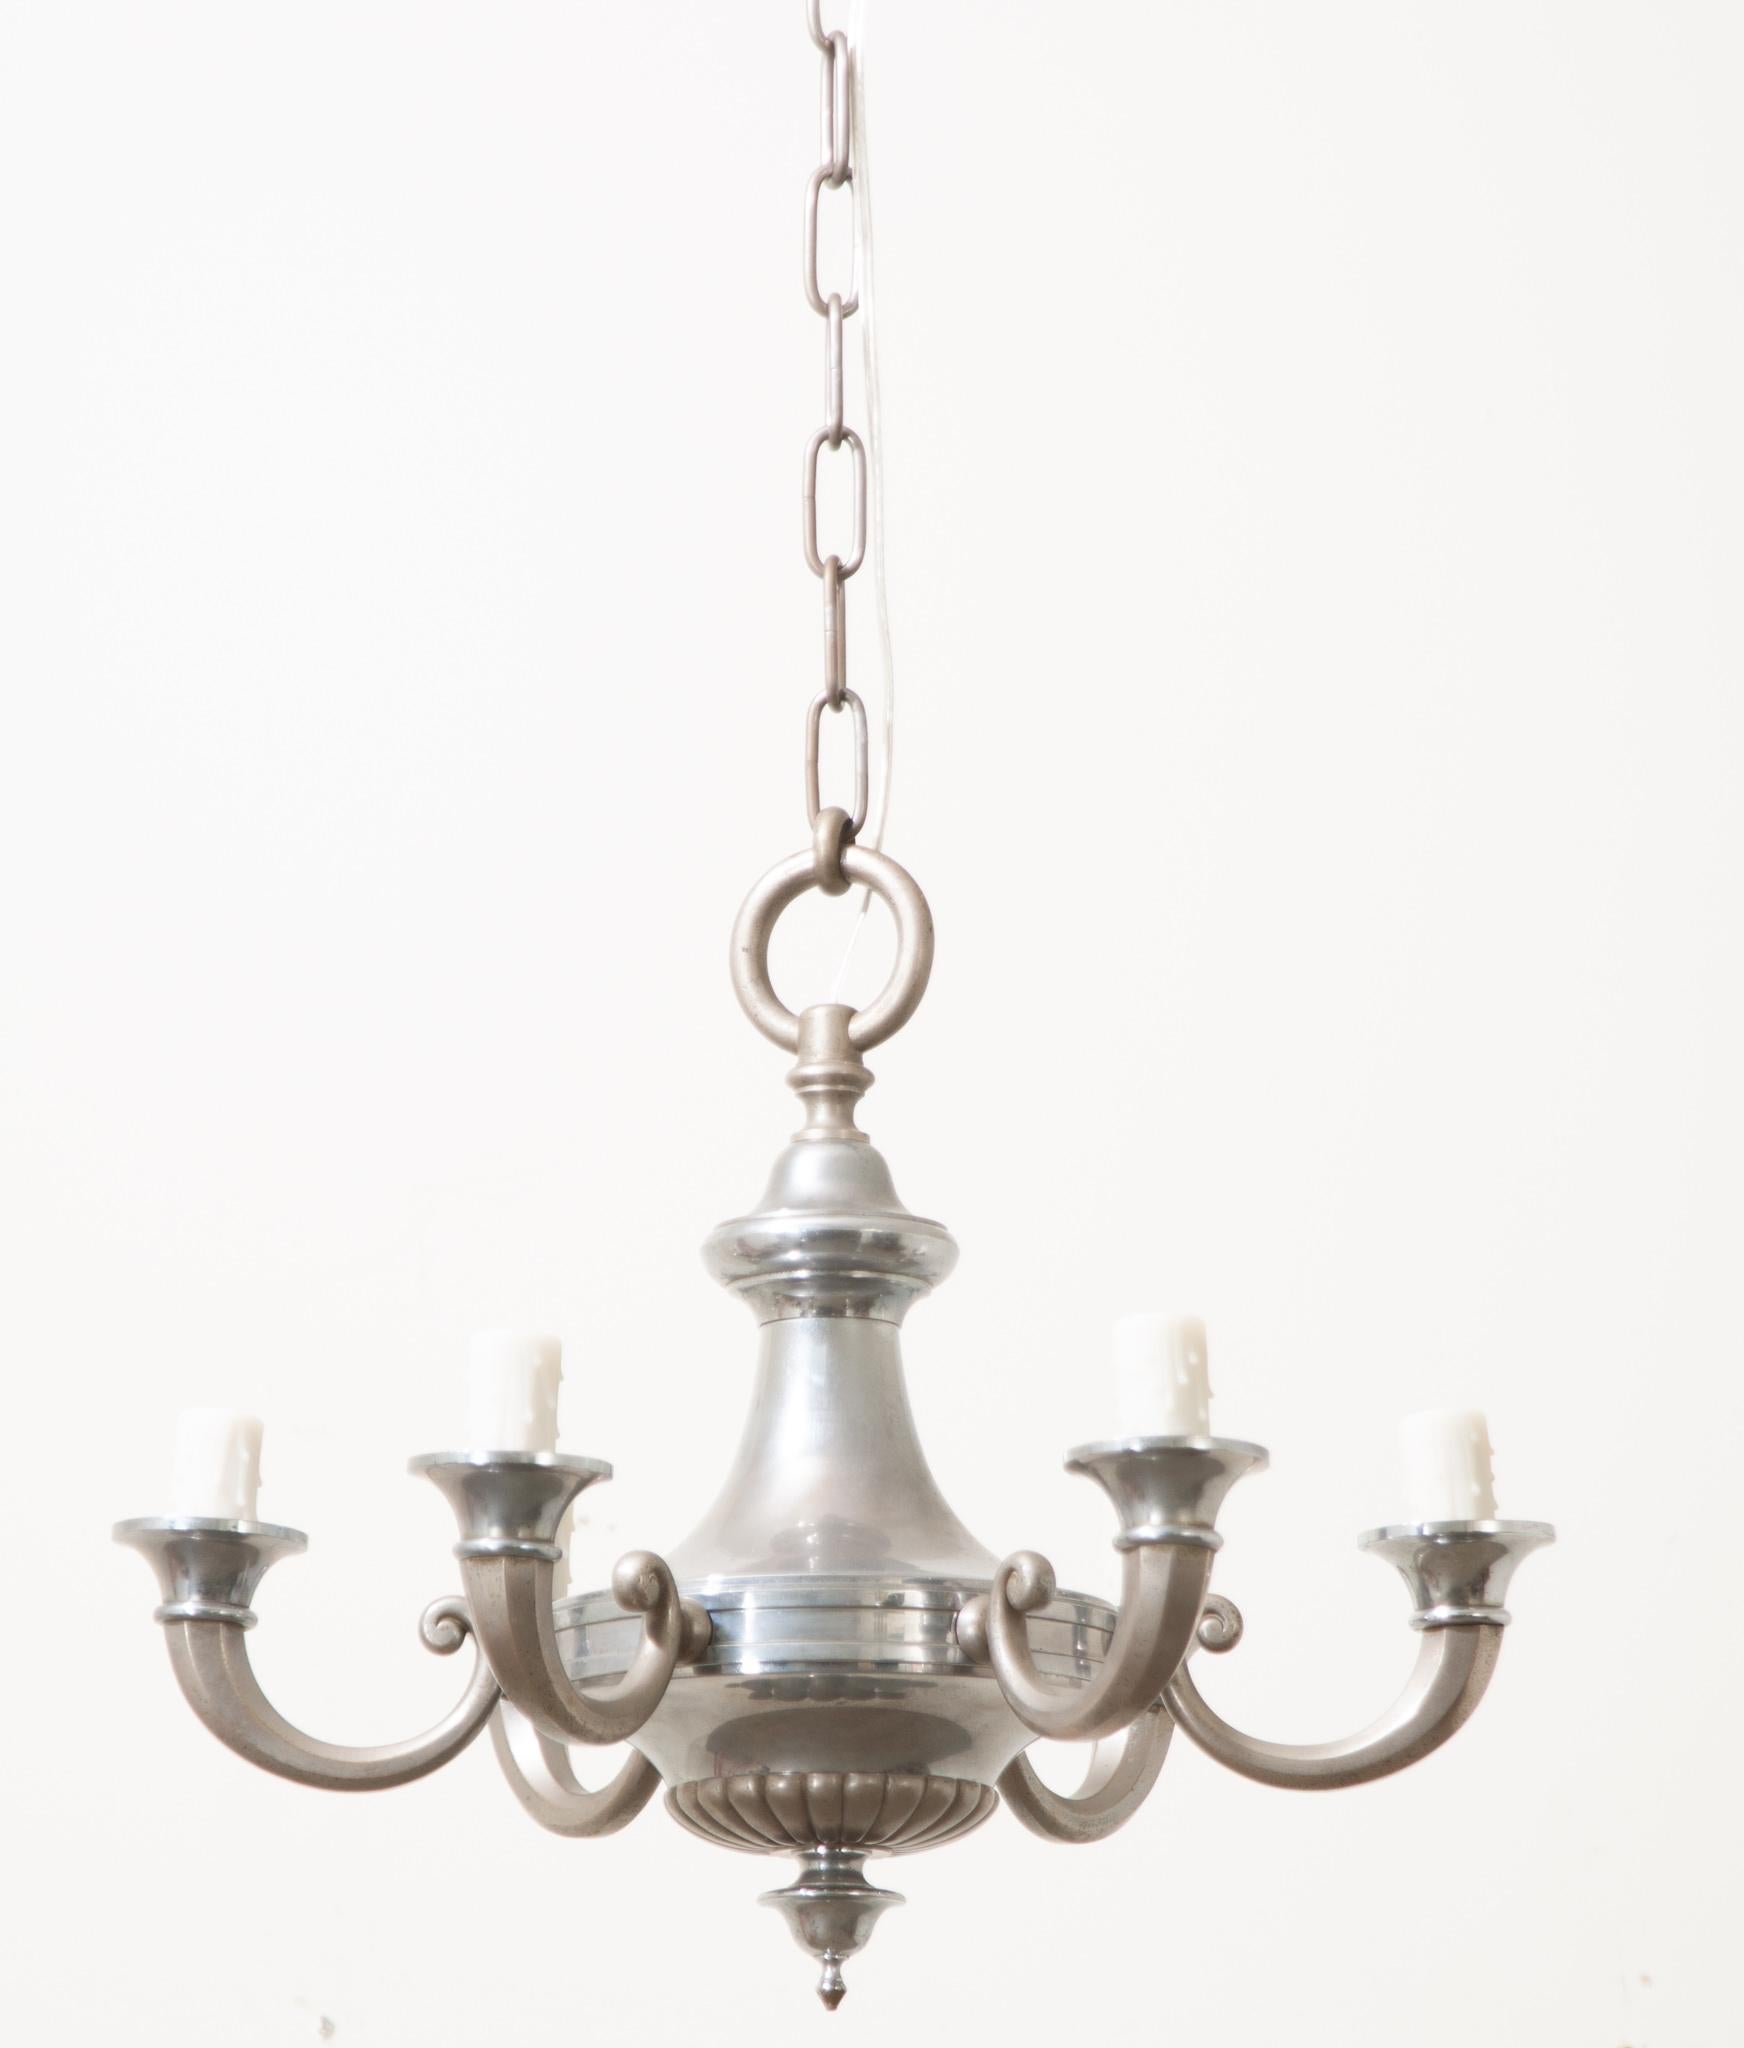 Ein klassischer französischer Kronleuchter aus Silberblech verleiht jedem Interieur Tiefe. Die urnenförmige Leuchte hat 6 geschwungene Kerzenarme mit künstlichen Kerzenabdeckungen, die für reichlich elektrisches Licht in Ihrem Raum sorgen. Schauen